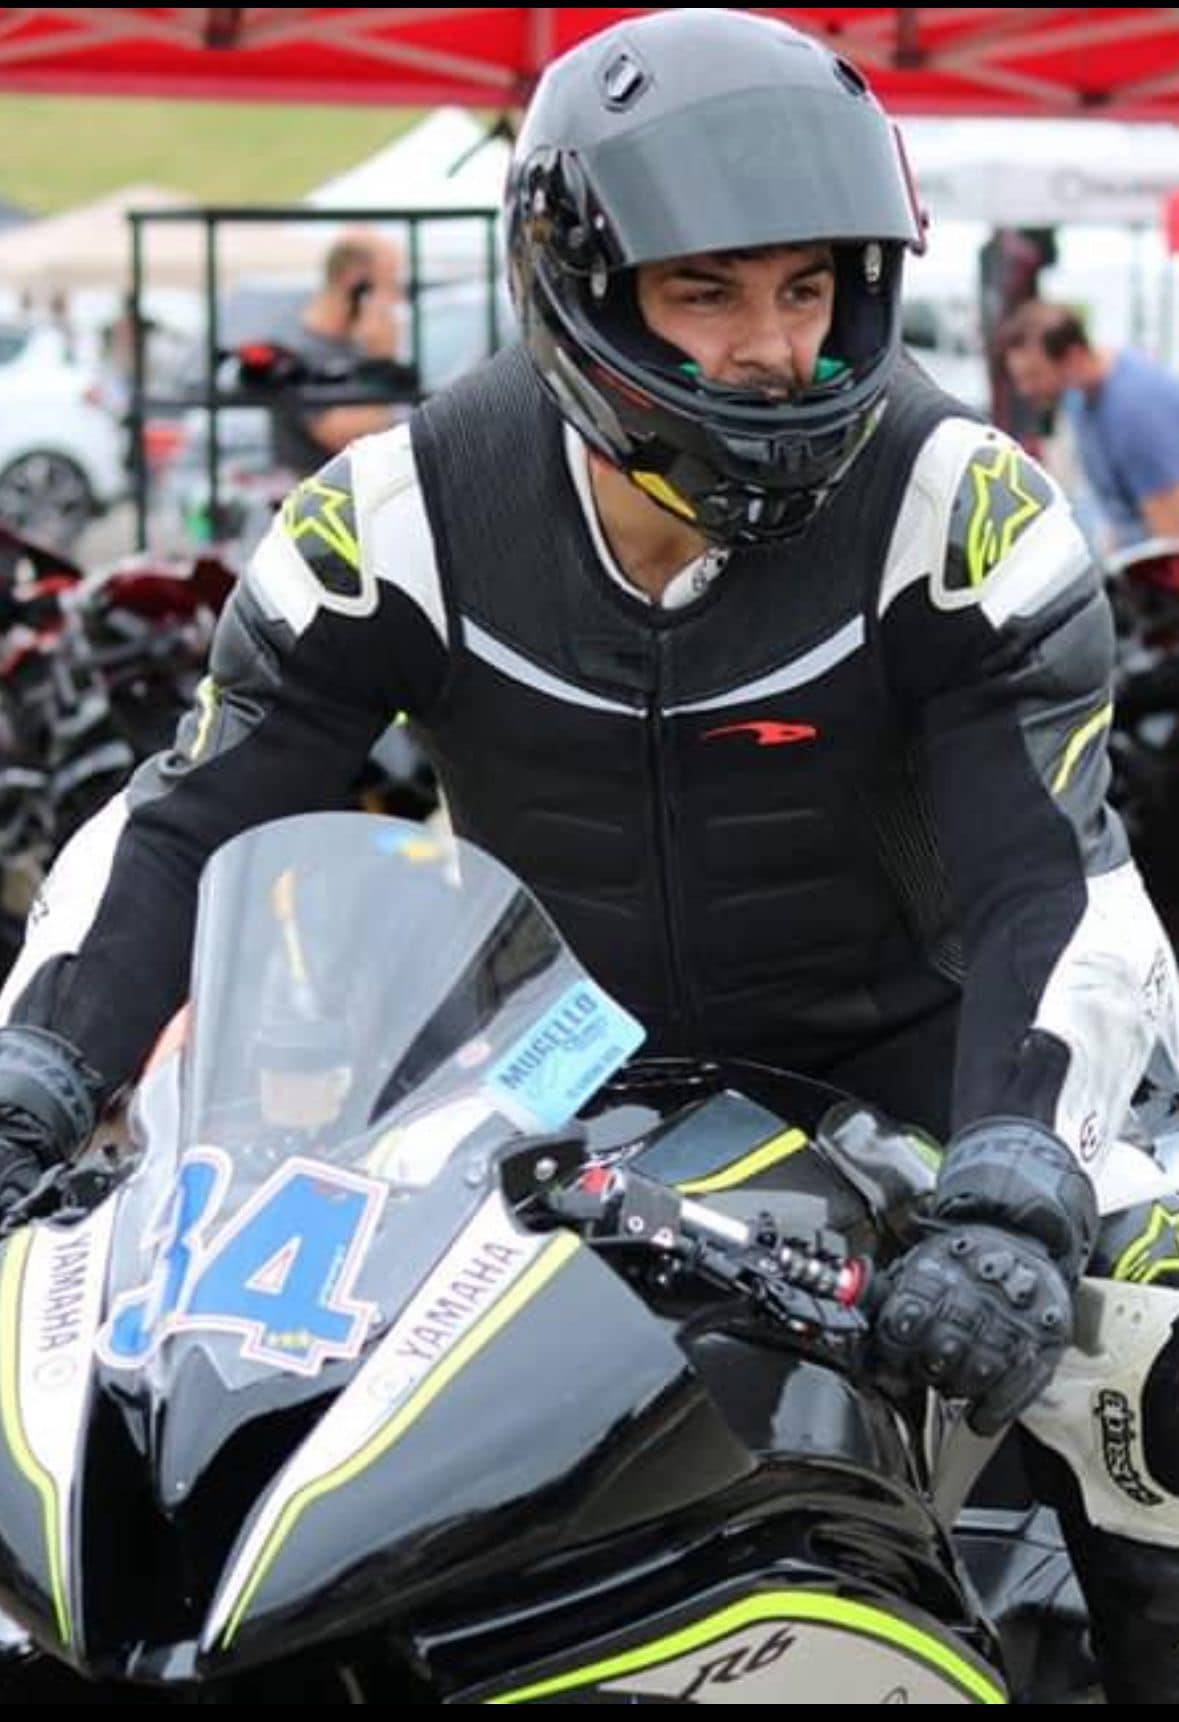 Lutto nel mondo del motociclismo: addio a Andrea Bergamelli, morto in pista a 35 anni